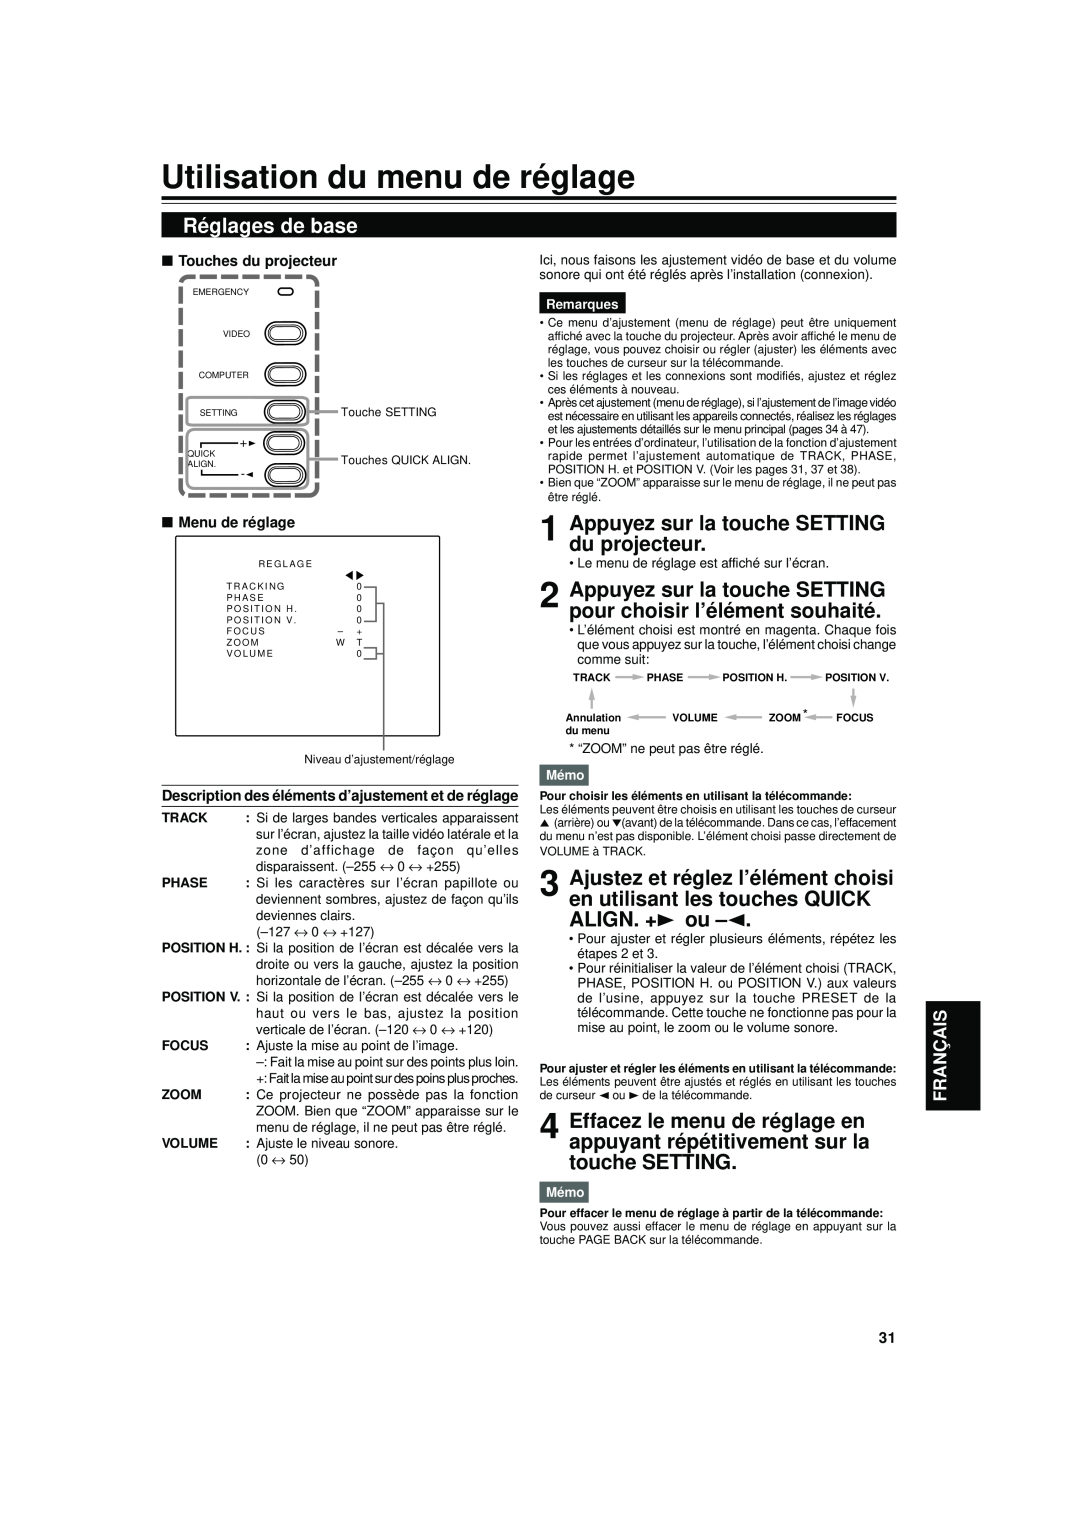 JVC DLA-S15U manual Utilisation du menu de réglage, Réglages de base, Appuyez sur la touche SETTING du projecteur 